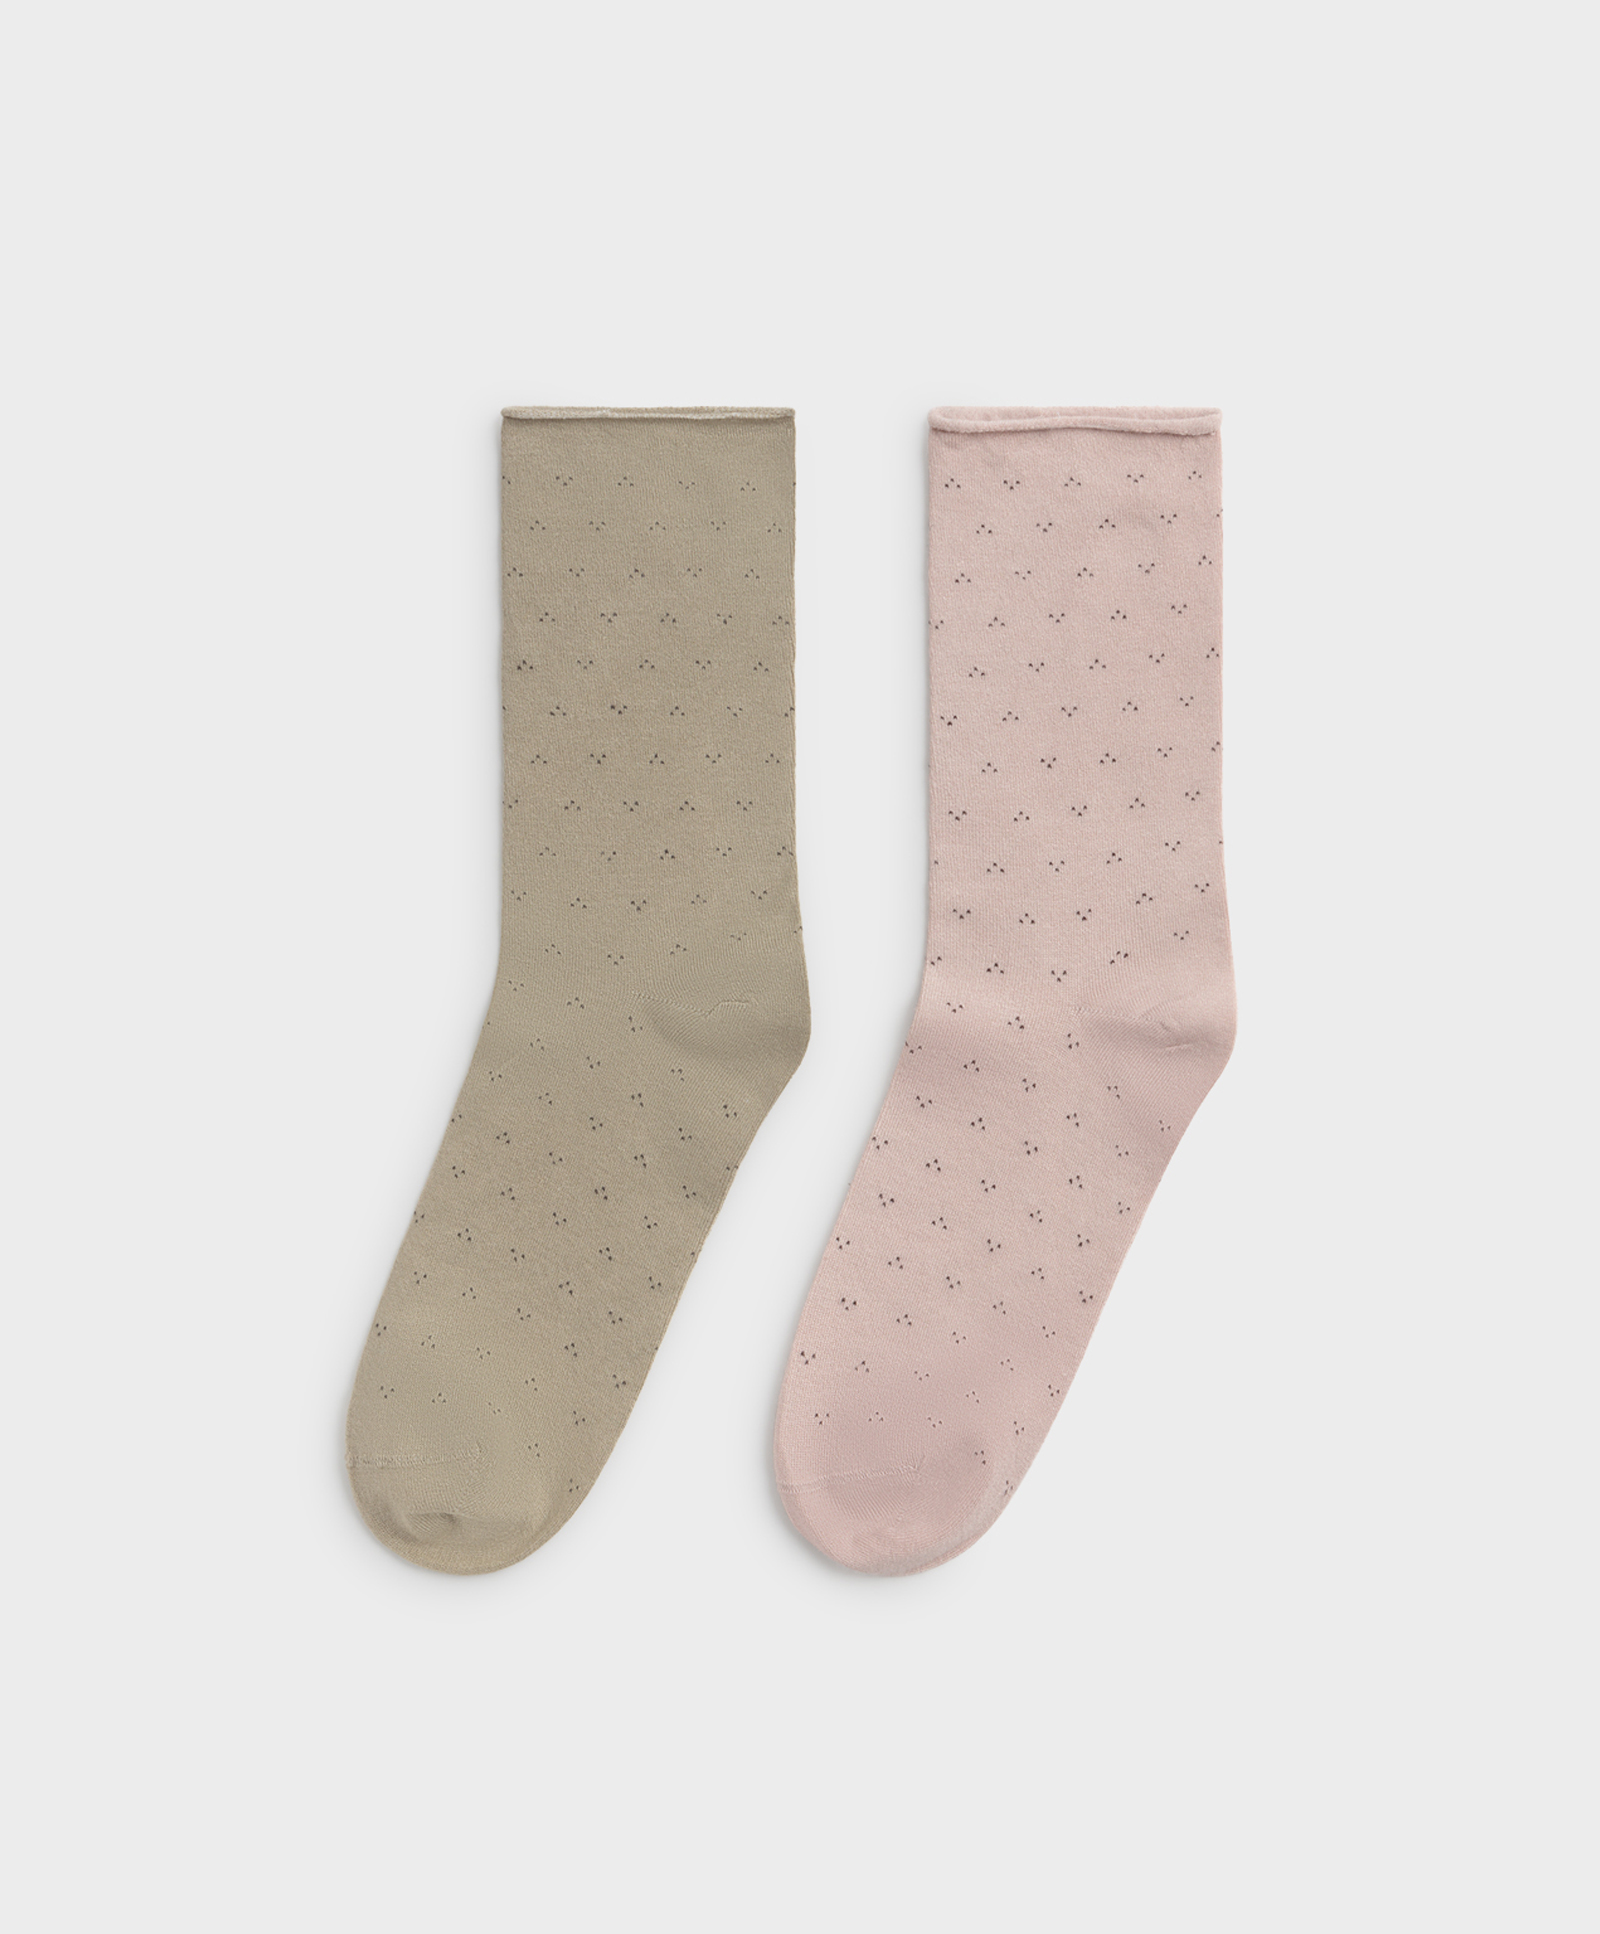 2 paar sokken van soft touch micromodal met fantasieprint